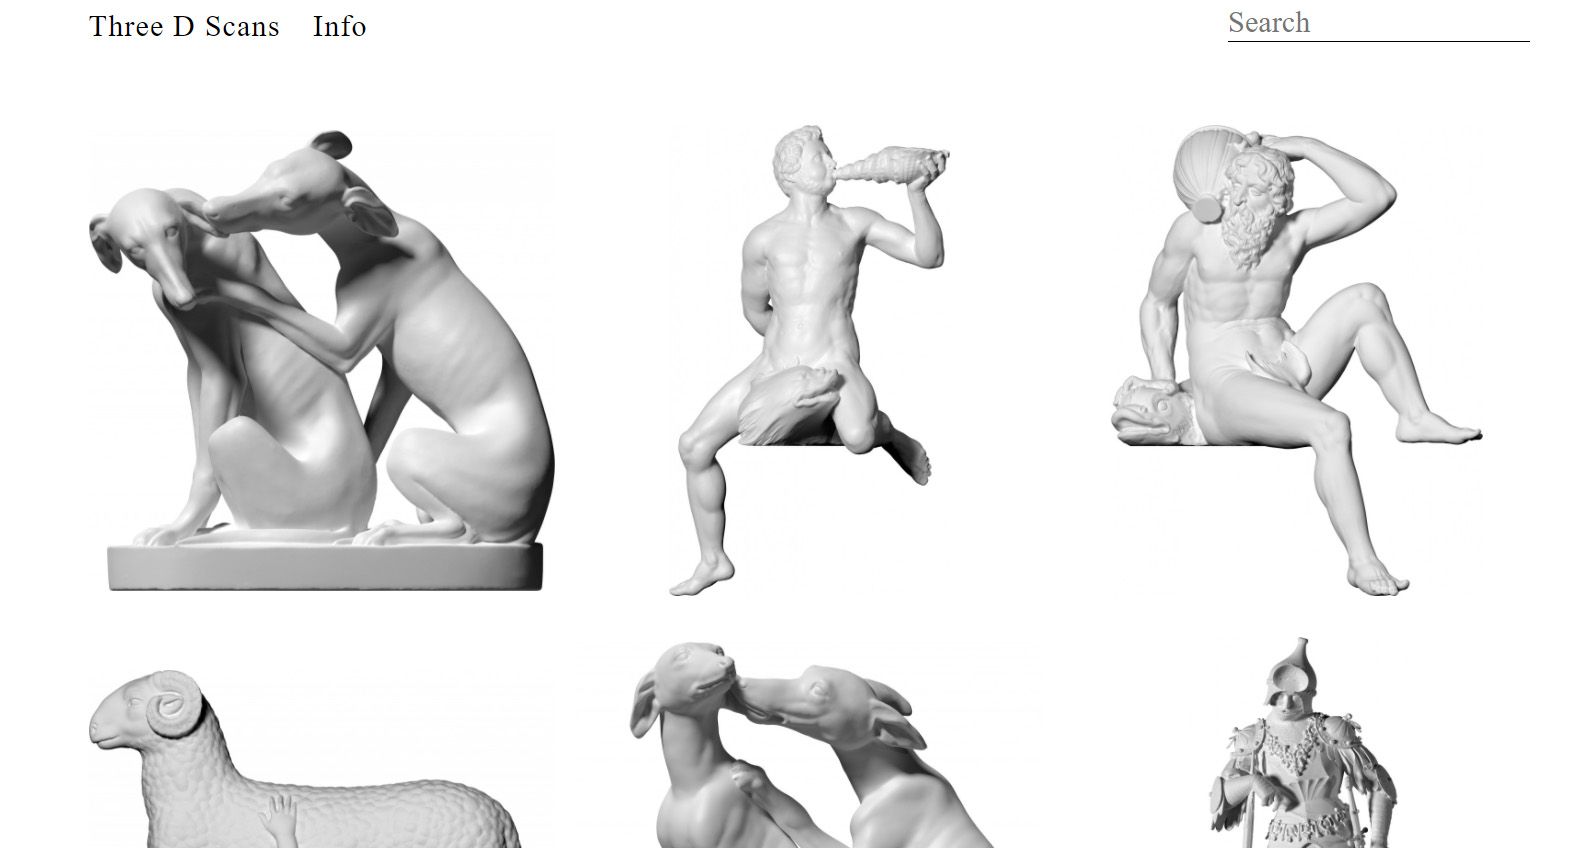 19 лучших сервисов онлайн-преподавателя по типографике и дизайну: Three D Scans - бесплатные высокодетальные 3D-модели классической скульптуры